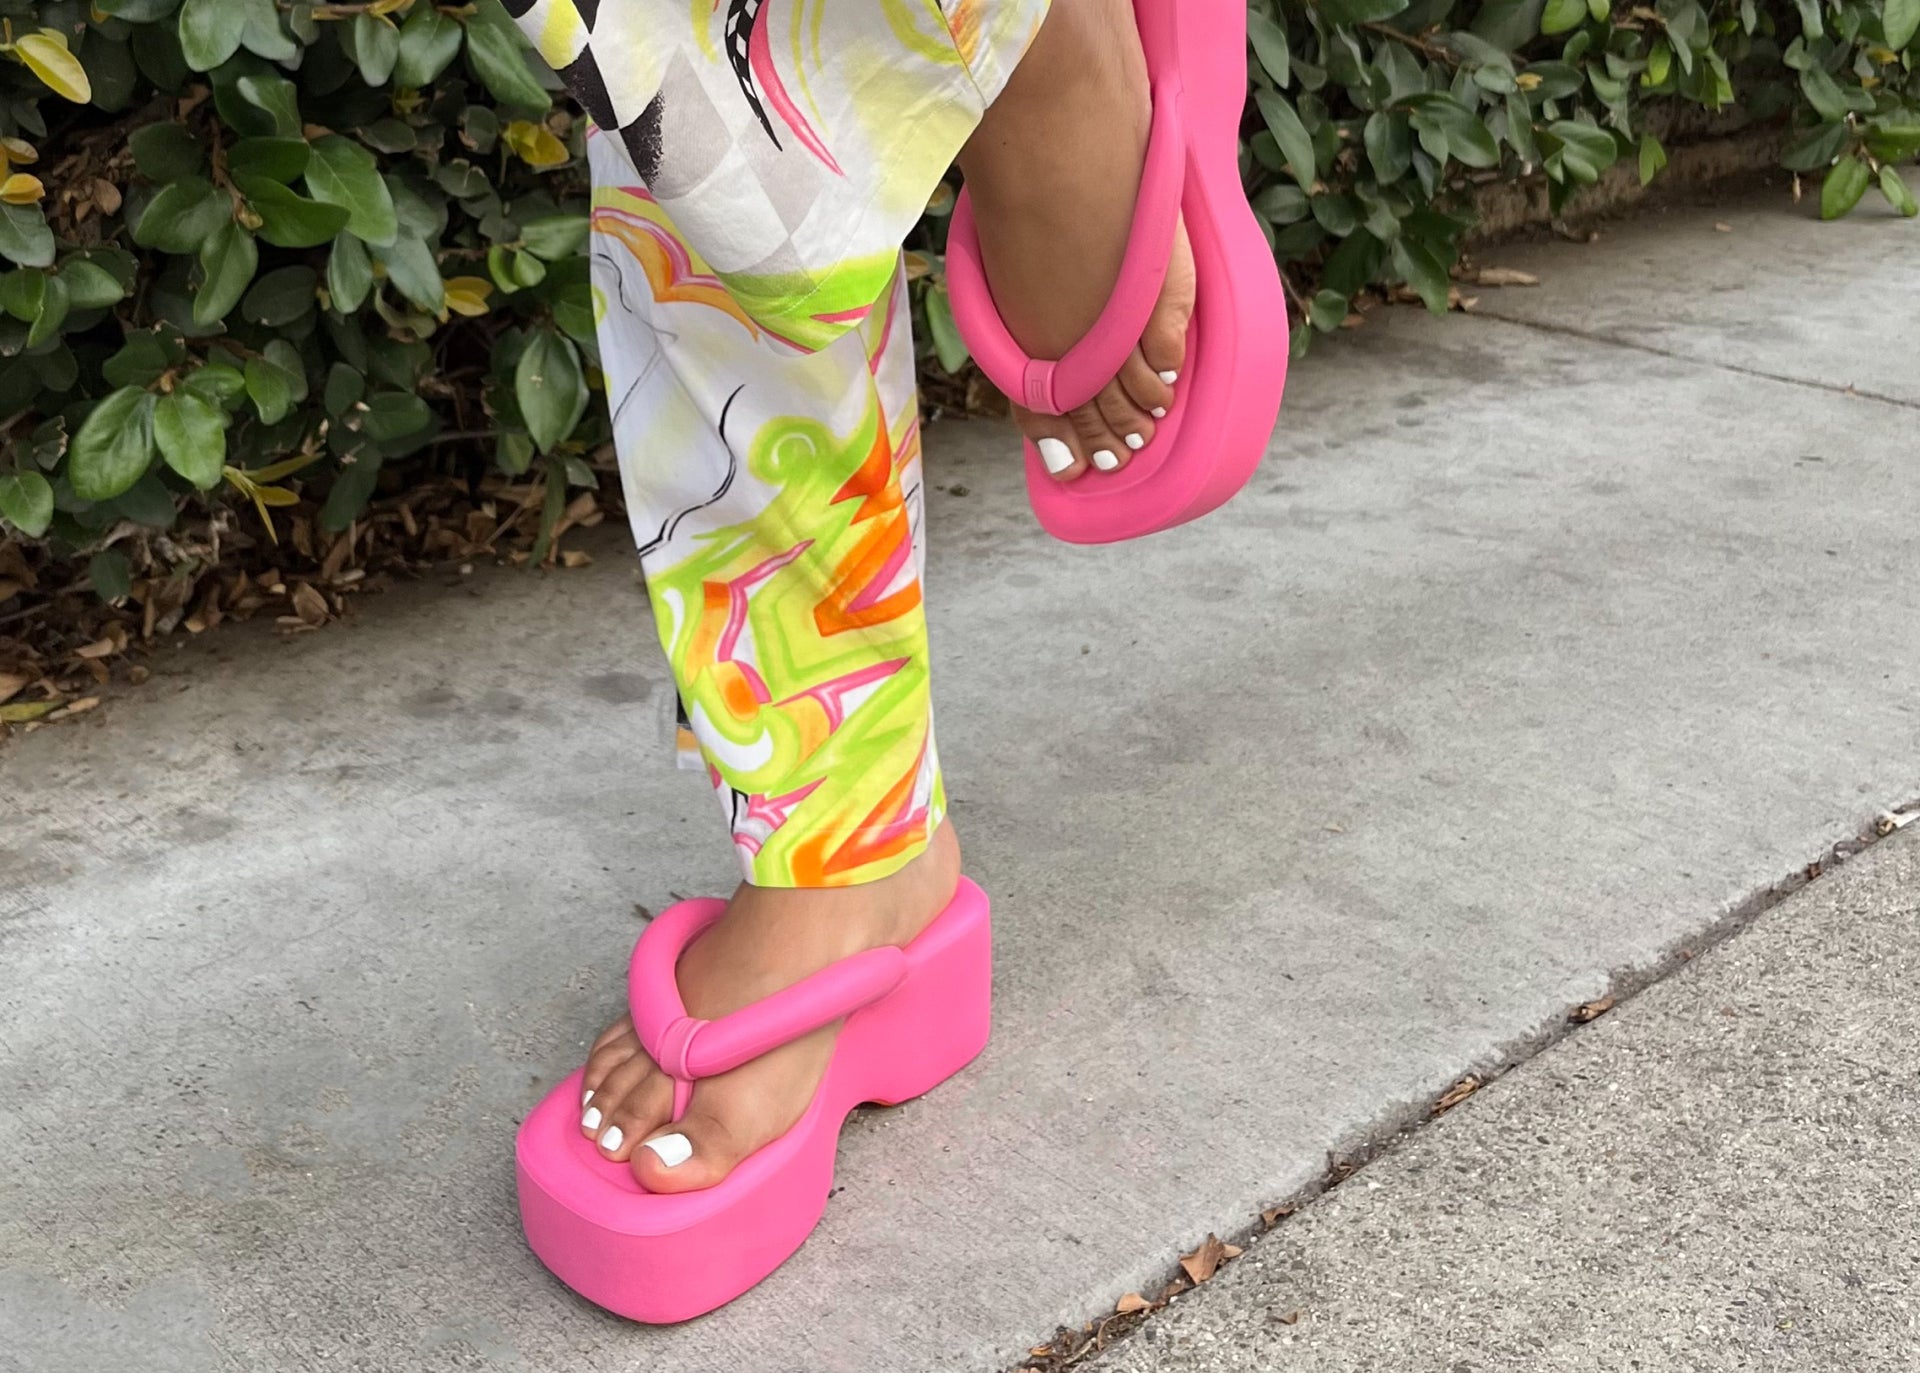 Model wearing the pink free platform flip flop